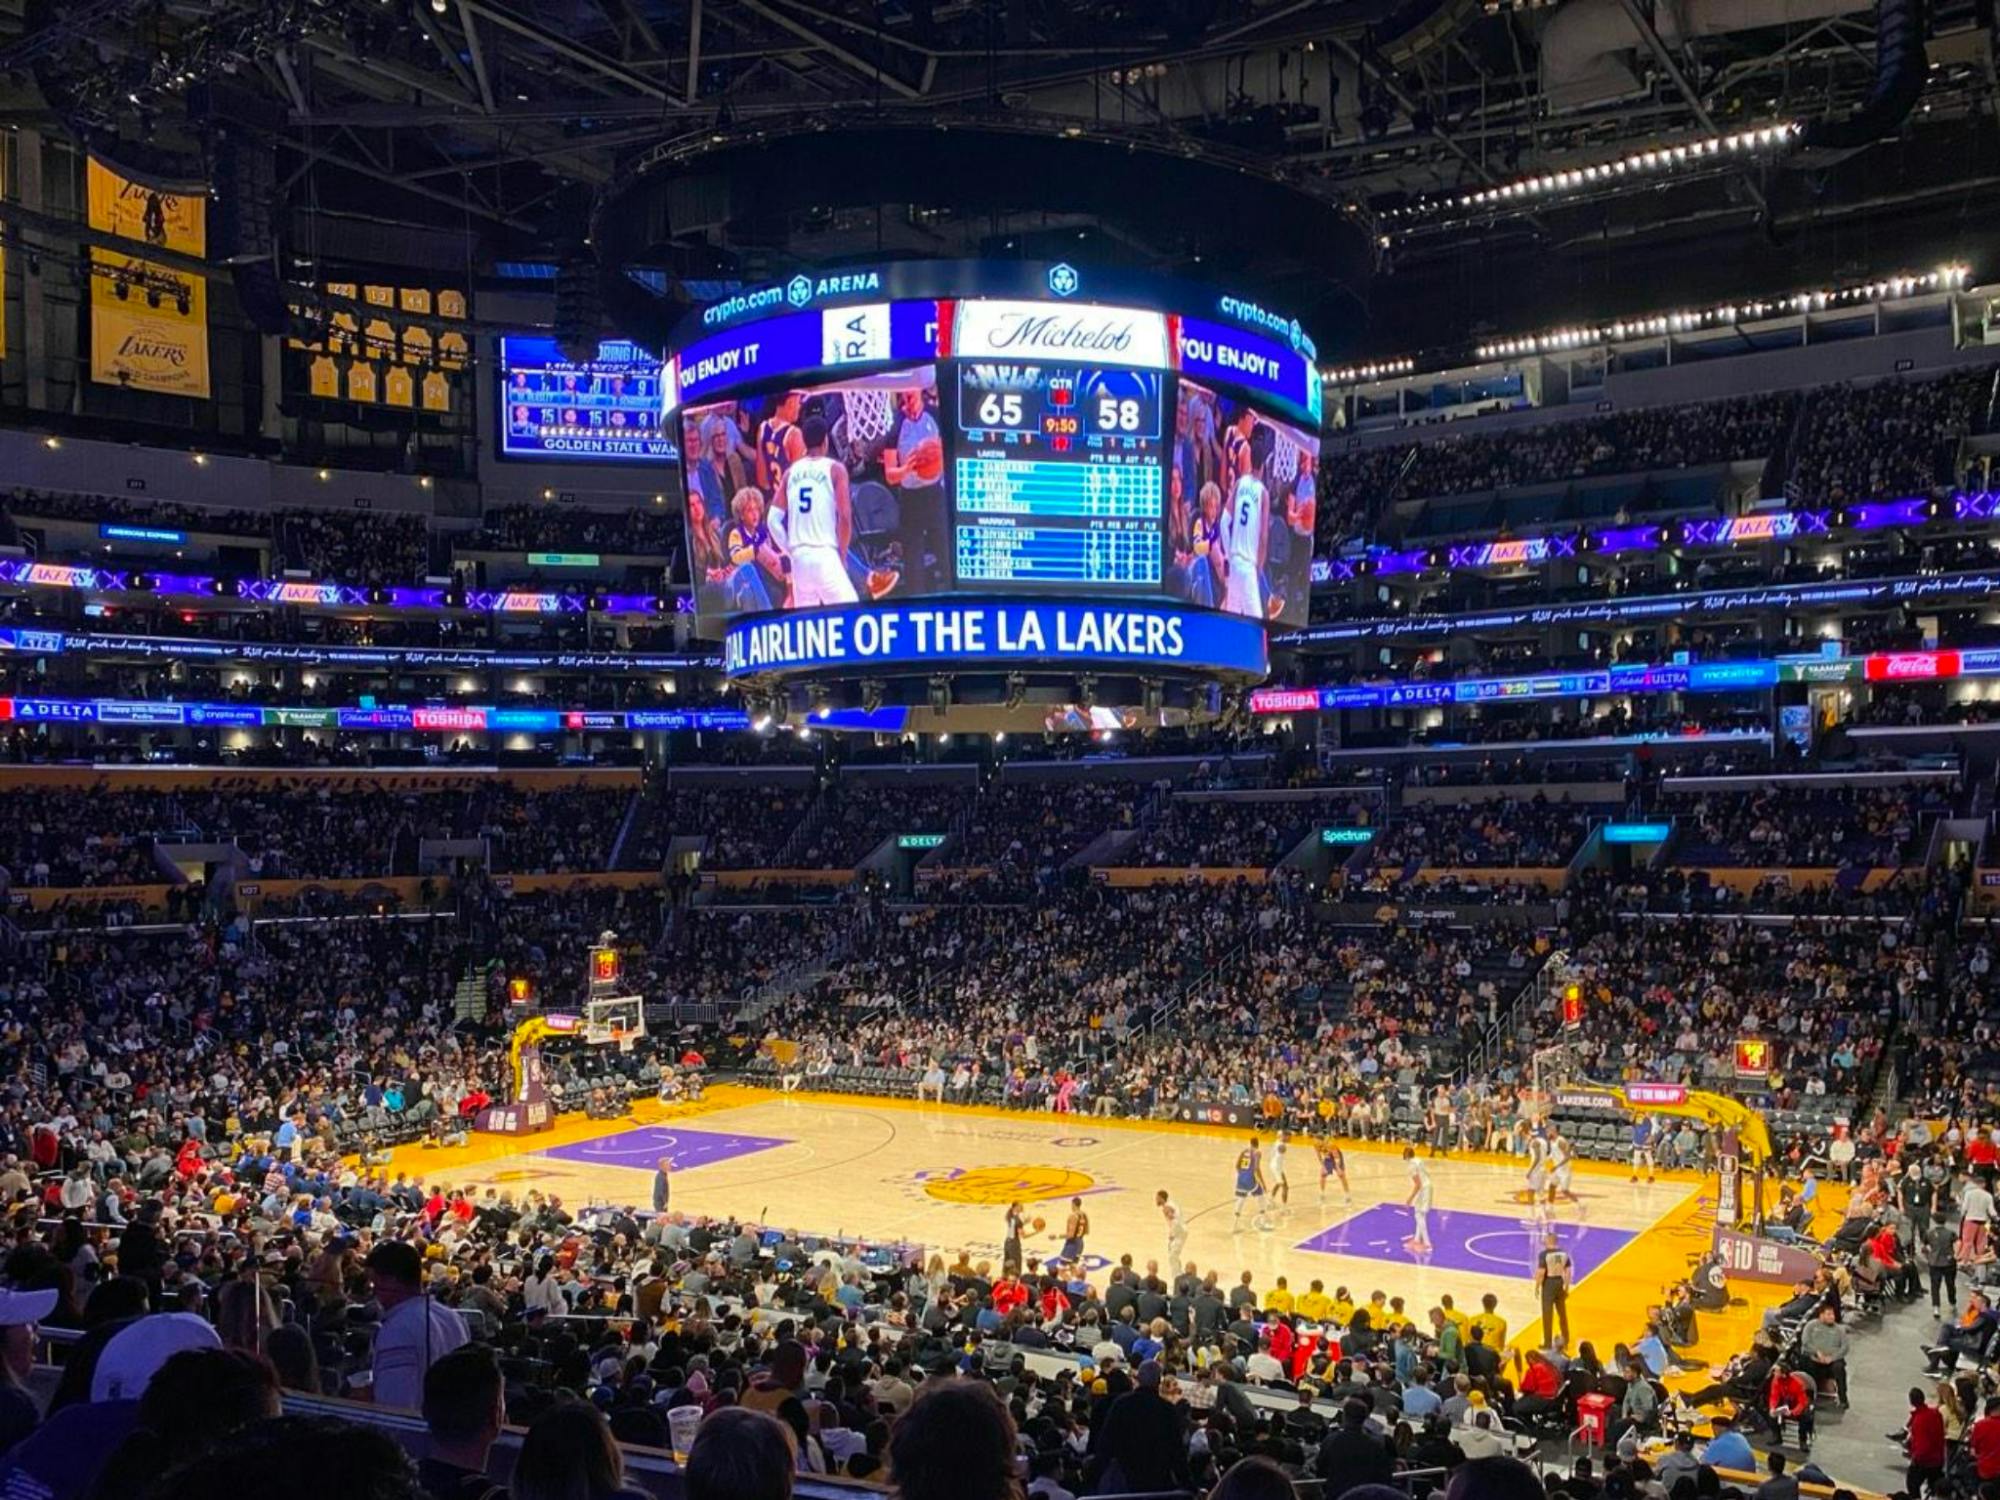 Billet pour le match NBA des Lakers de Los Angeles